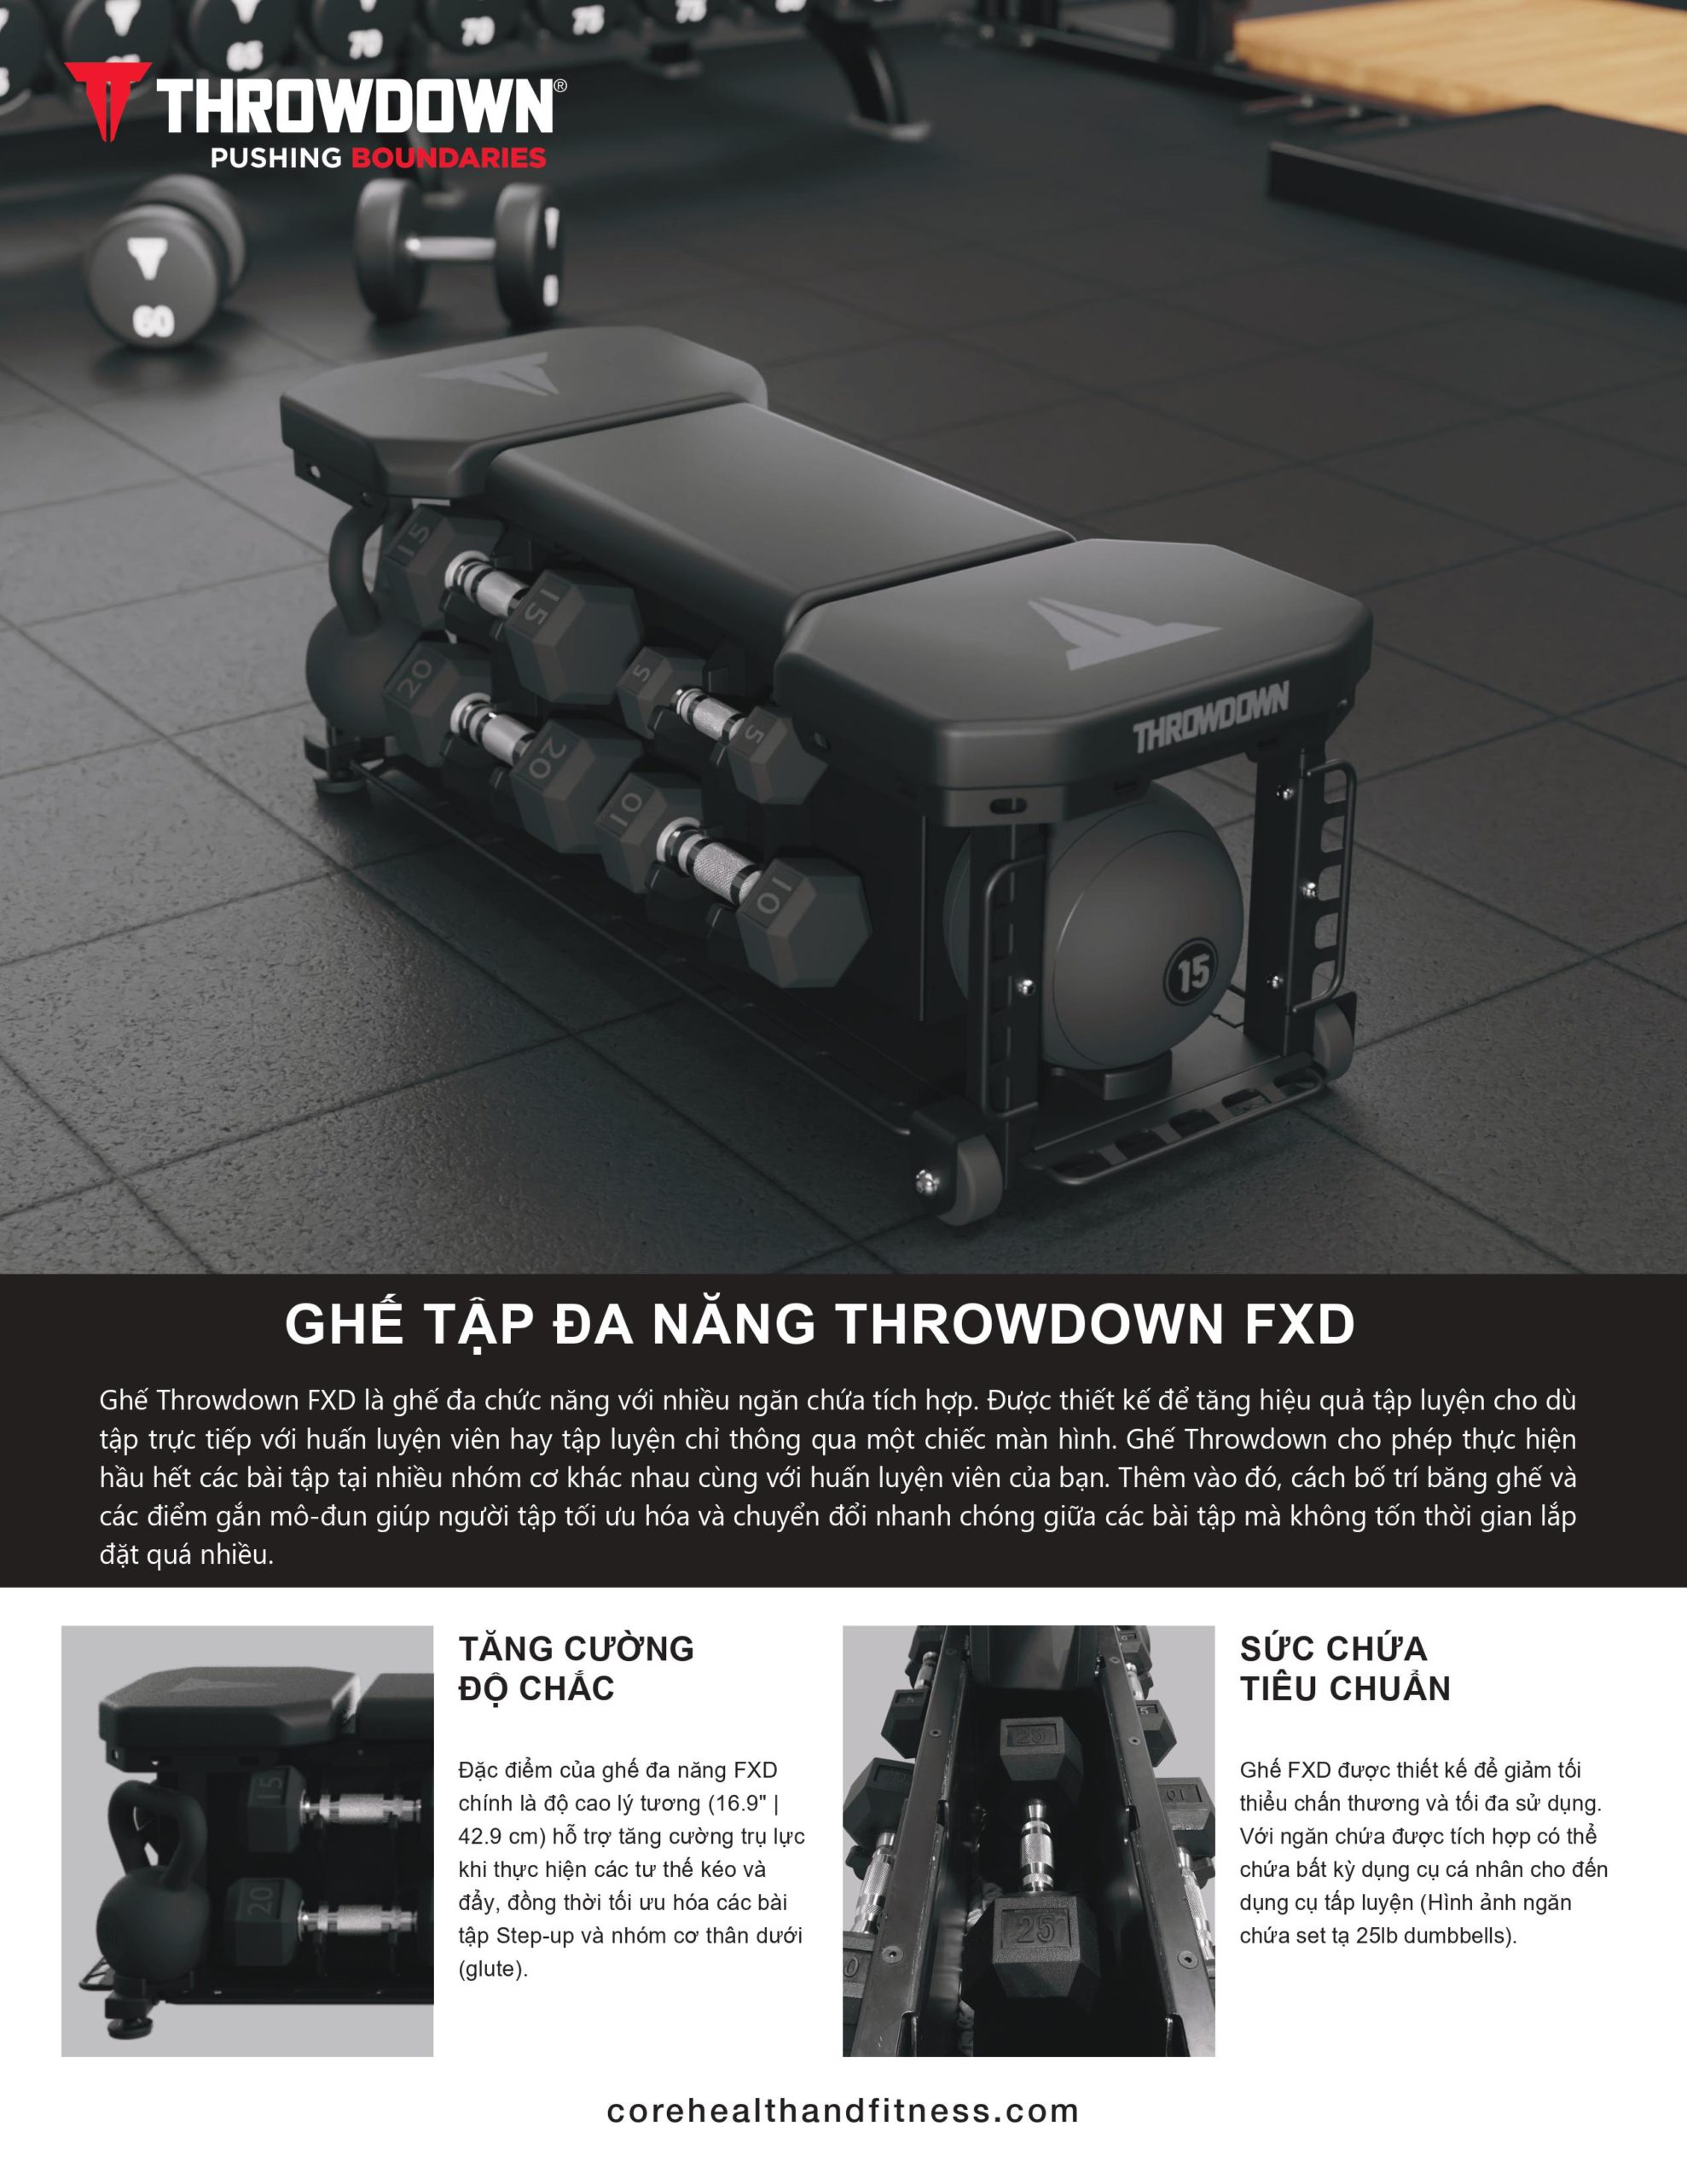 Throwdown FXD Bench features